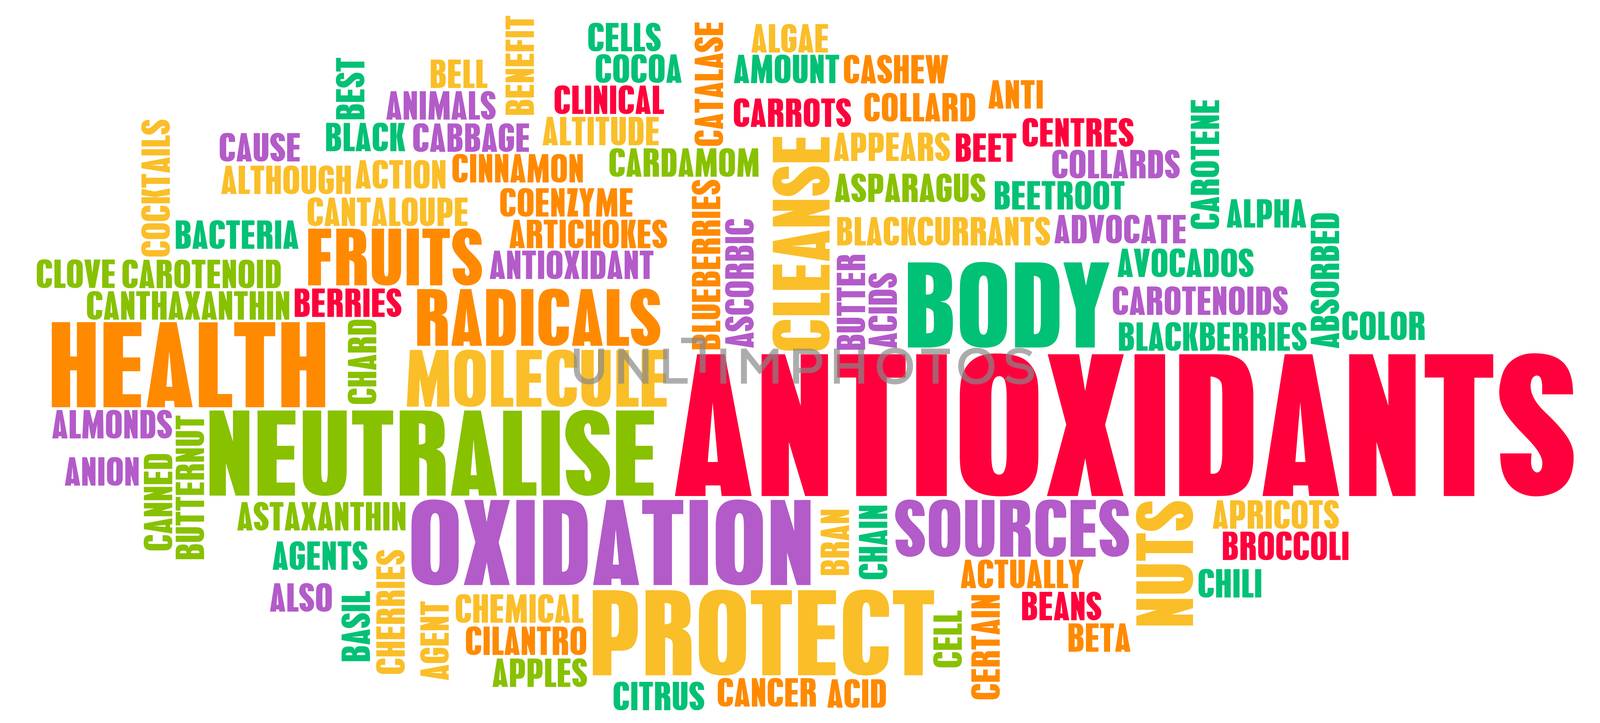 Antioxidants Concept or Anti Oxidants or Antioxidant